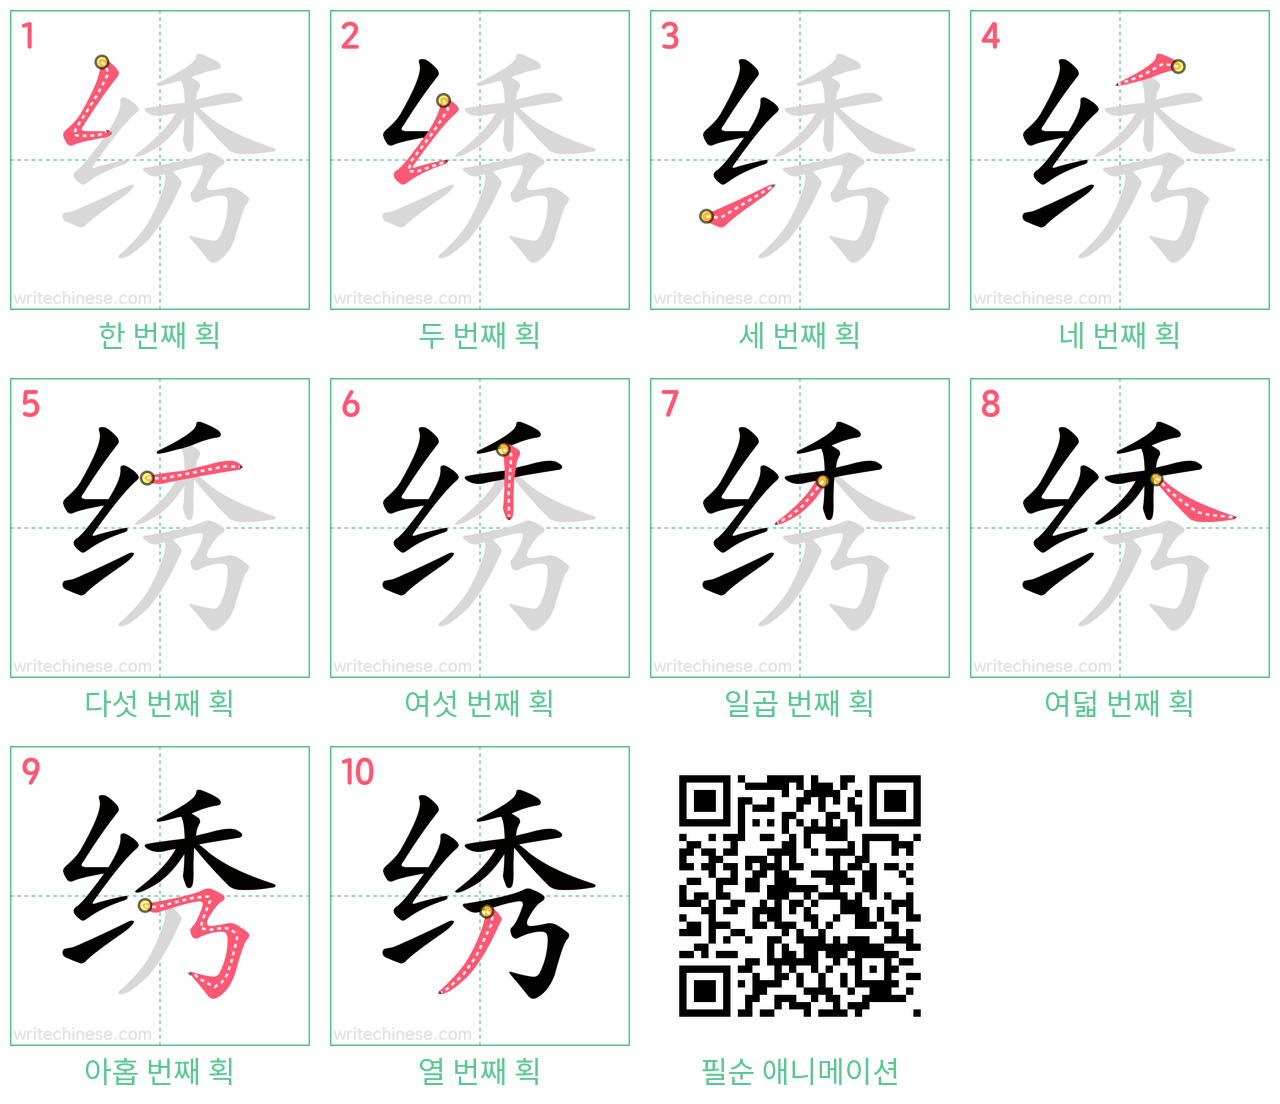 绣 step-by-step stroke order diagrams